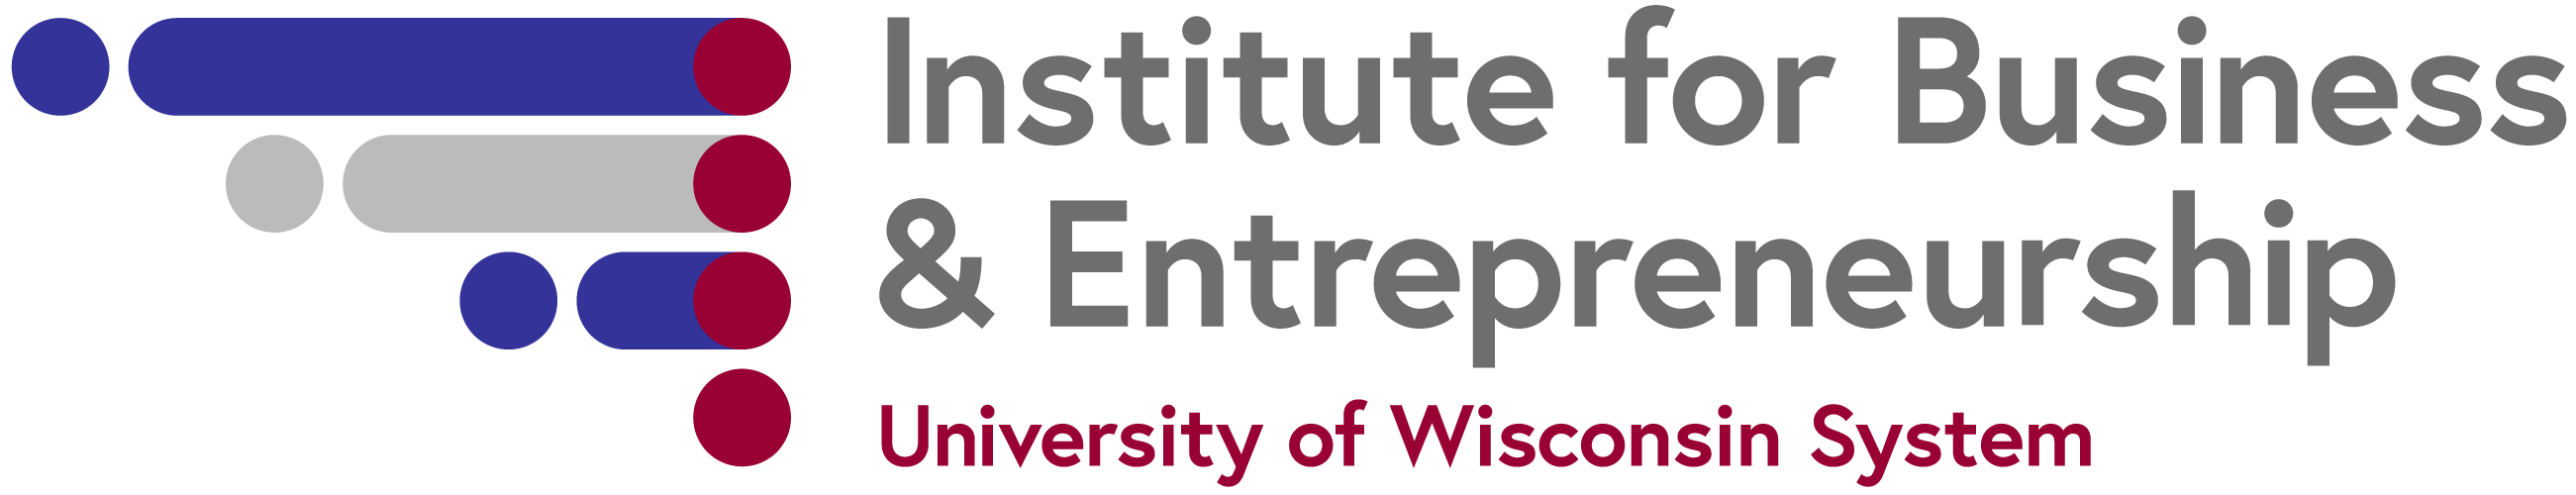 UW Institute for Business & Entrepreneurship